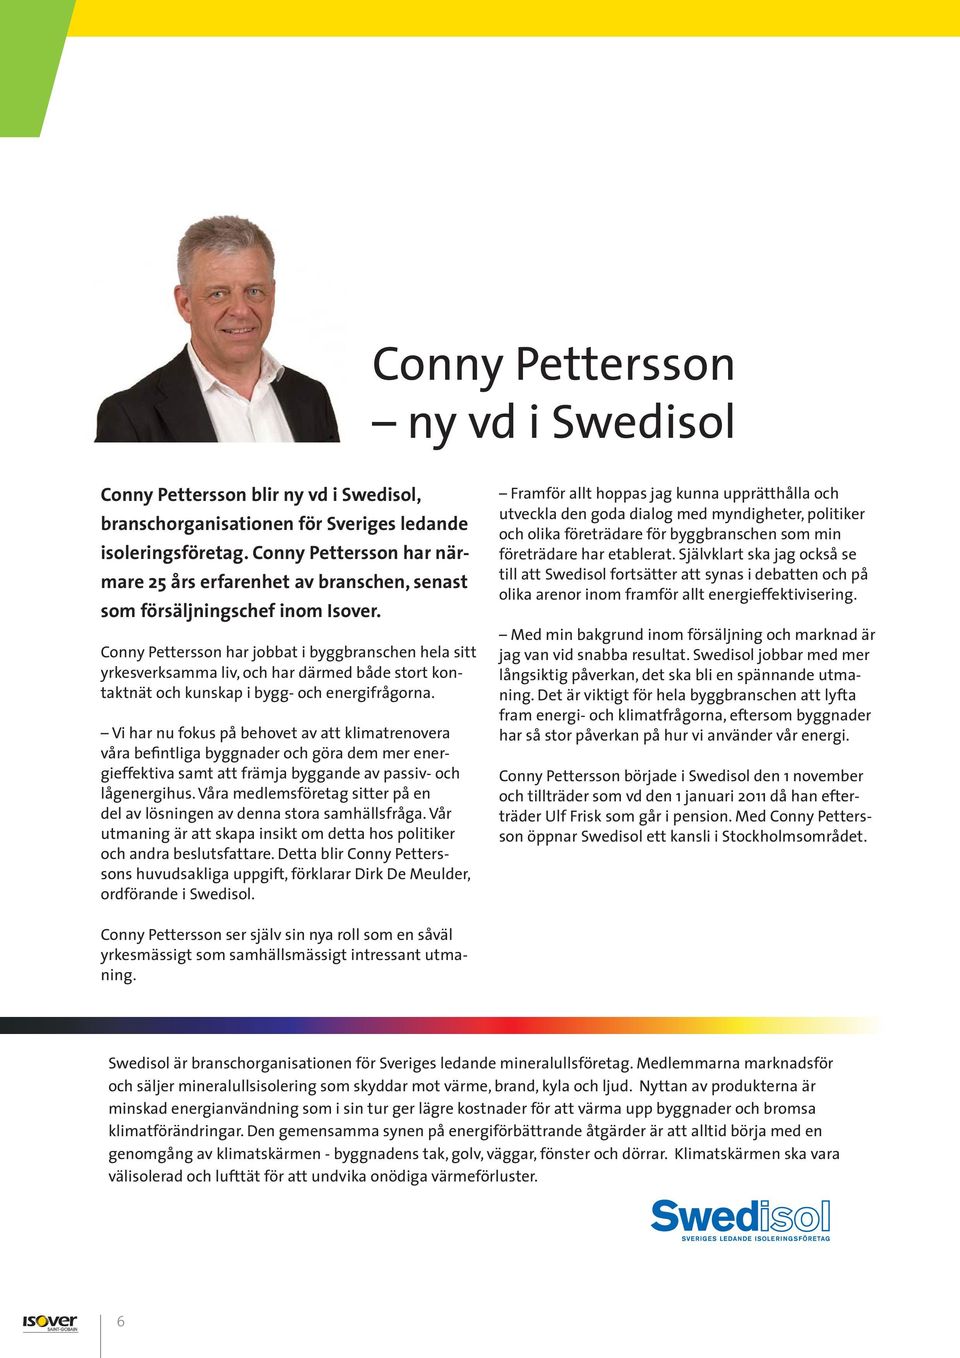 Conny Pettersson har jobbat i byggbranschen hela sitt yrkesverksamma liv, och har därmed både stort kontaktnät och kunskap i bygg- och energifrågorna.